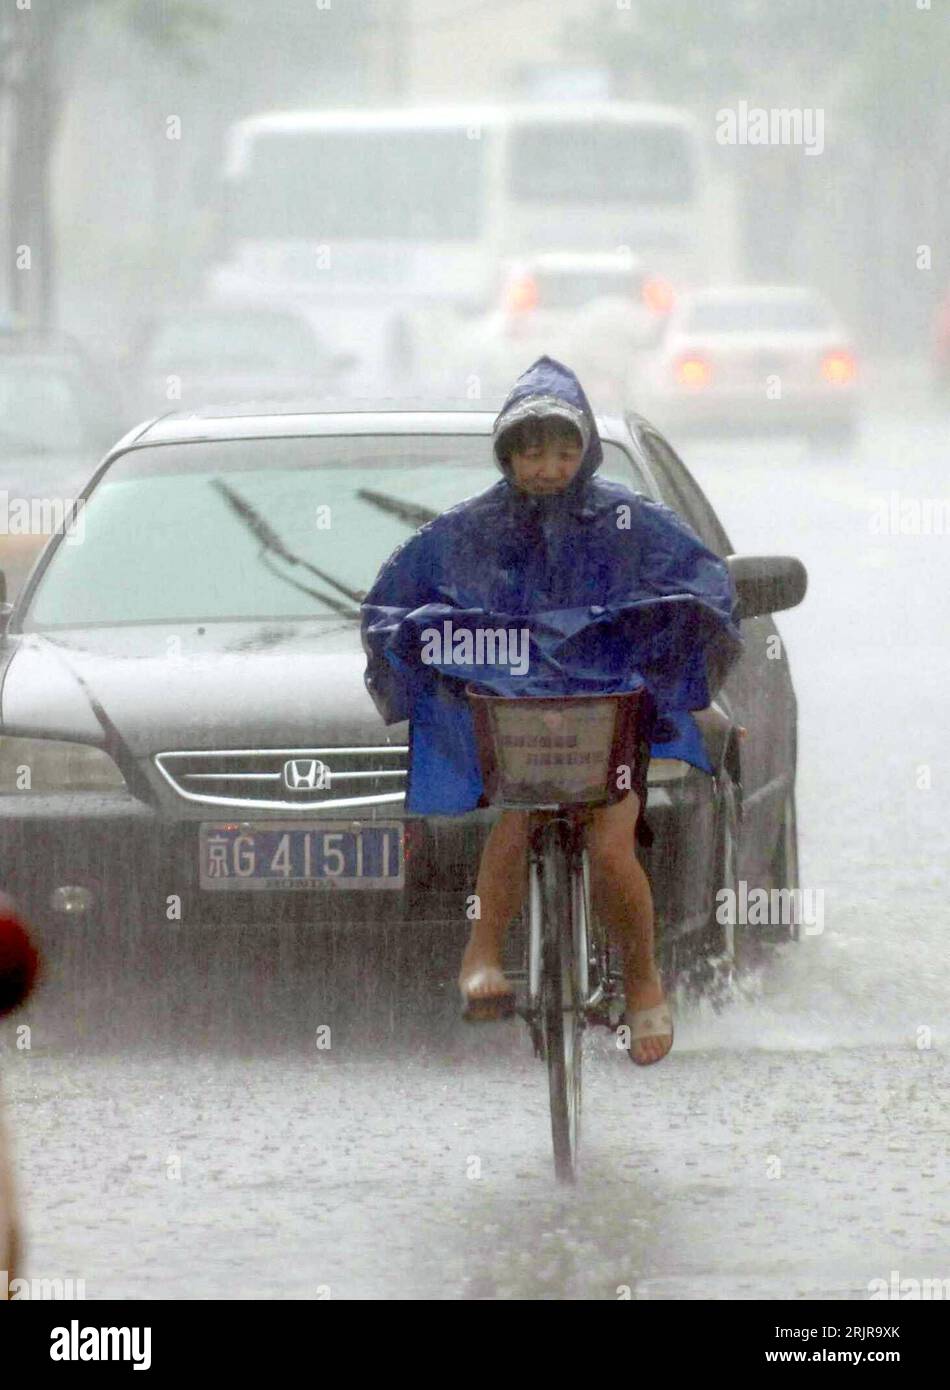 Bildnummer: 51349484  Datum: 24.07.2006  Copyright: imago/Xinhua Radfahrerin kämpft sich durch einen heftigen Regenguss in Peking - PUBLICATIONxNOTxINxCHN, Personen; 2006, Peking, Regenfall, Regenfälle, Regen, Regenwetter, Wasser, Unwetter, Radfahrer, regnen, regnet; , hoch, Kbdig, Einzelbild, China,  , Straße, Verkehr, Wetter Stock Photo